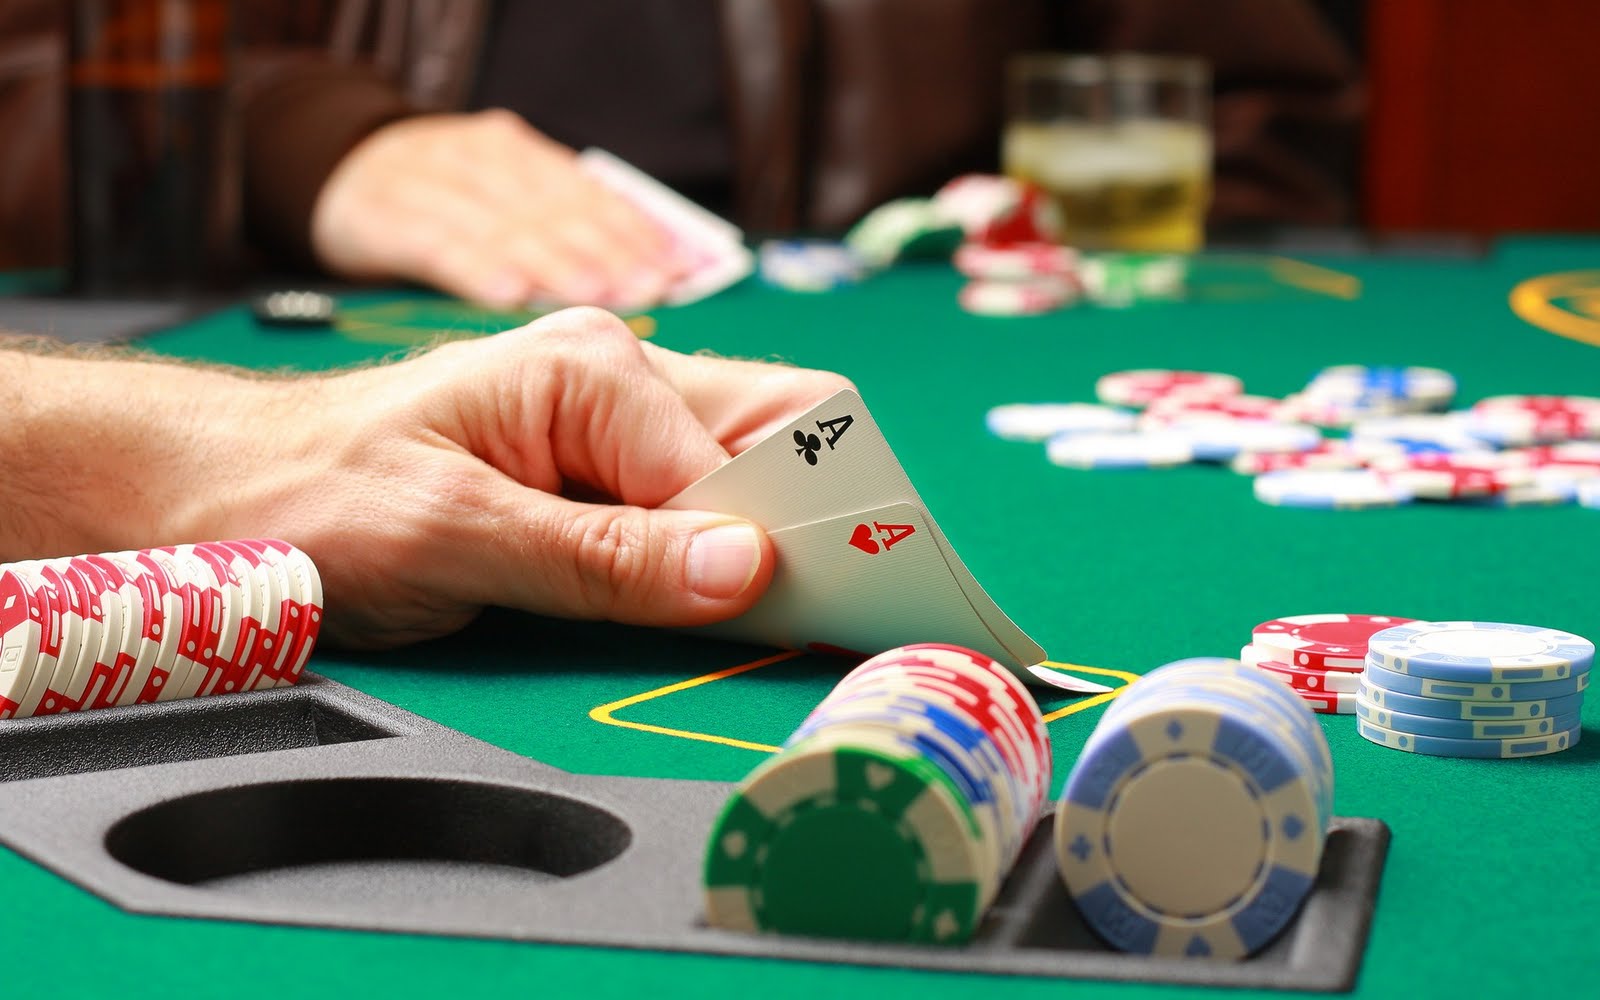 ポーカー壁紙,ゲーム,ポーカー,ギャンブル,カジノ,トランプゲーム